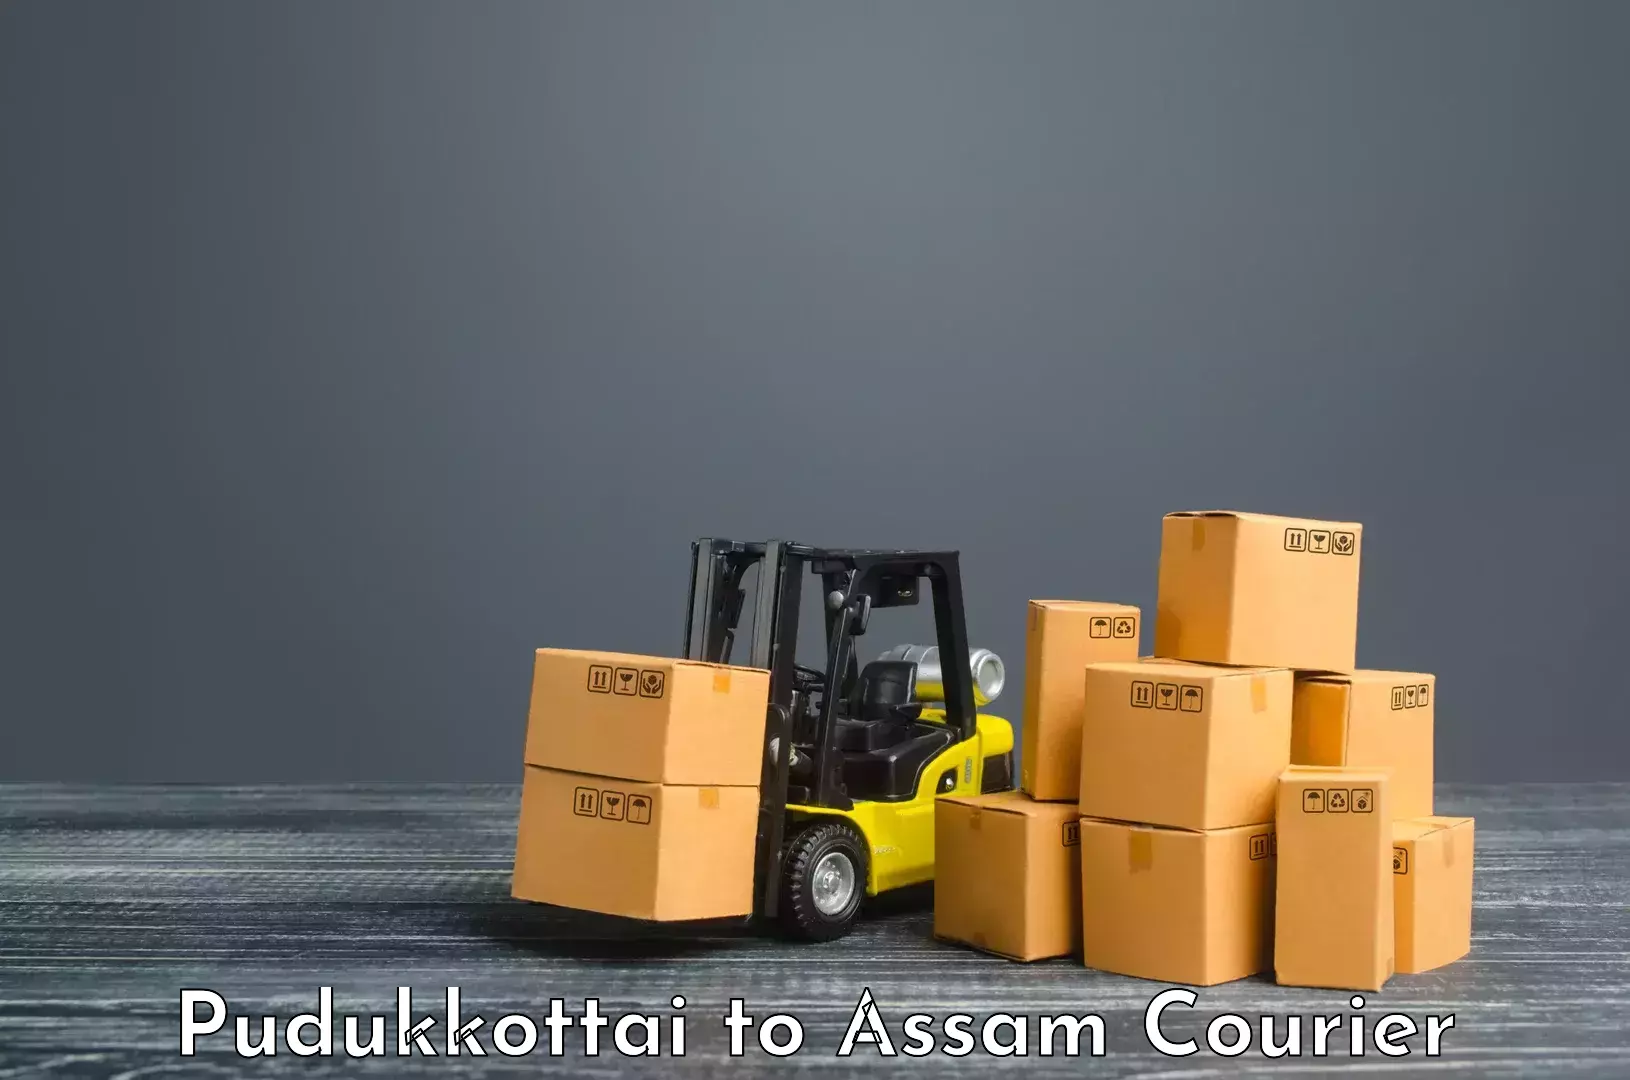 Specialized shipment handling in Pudukkottai to Majuli